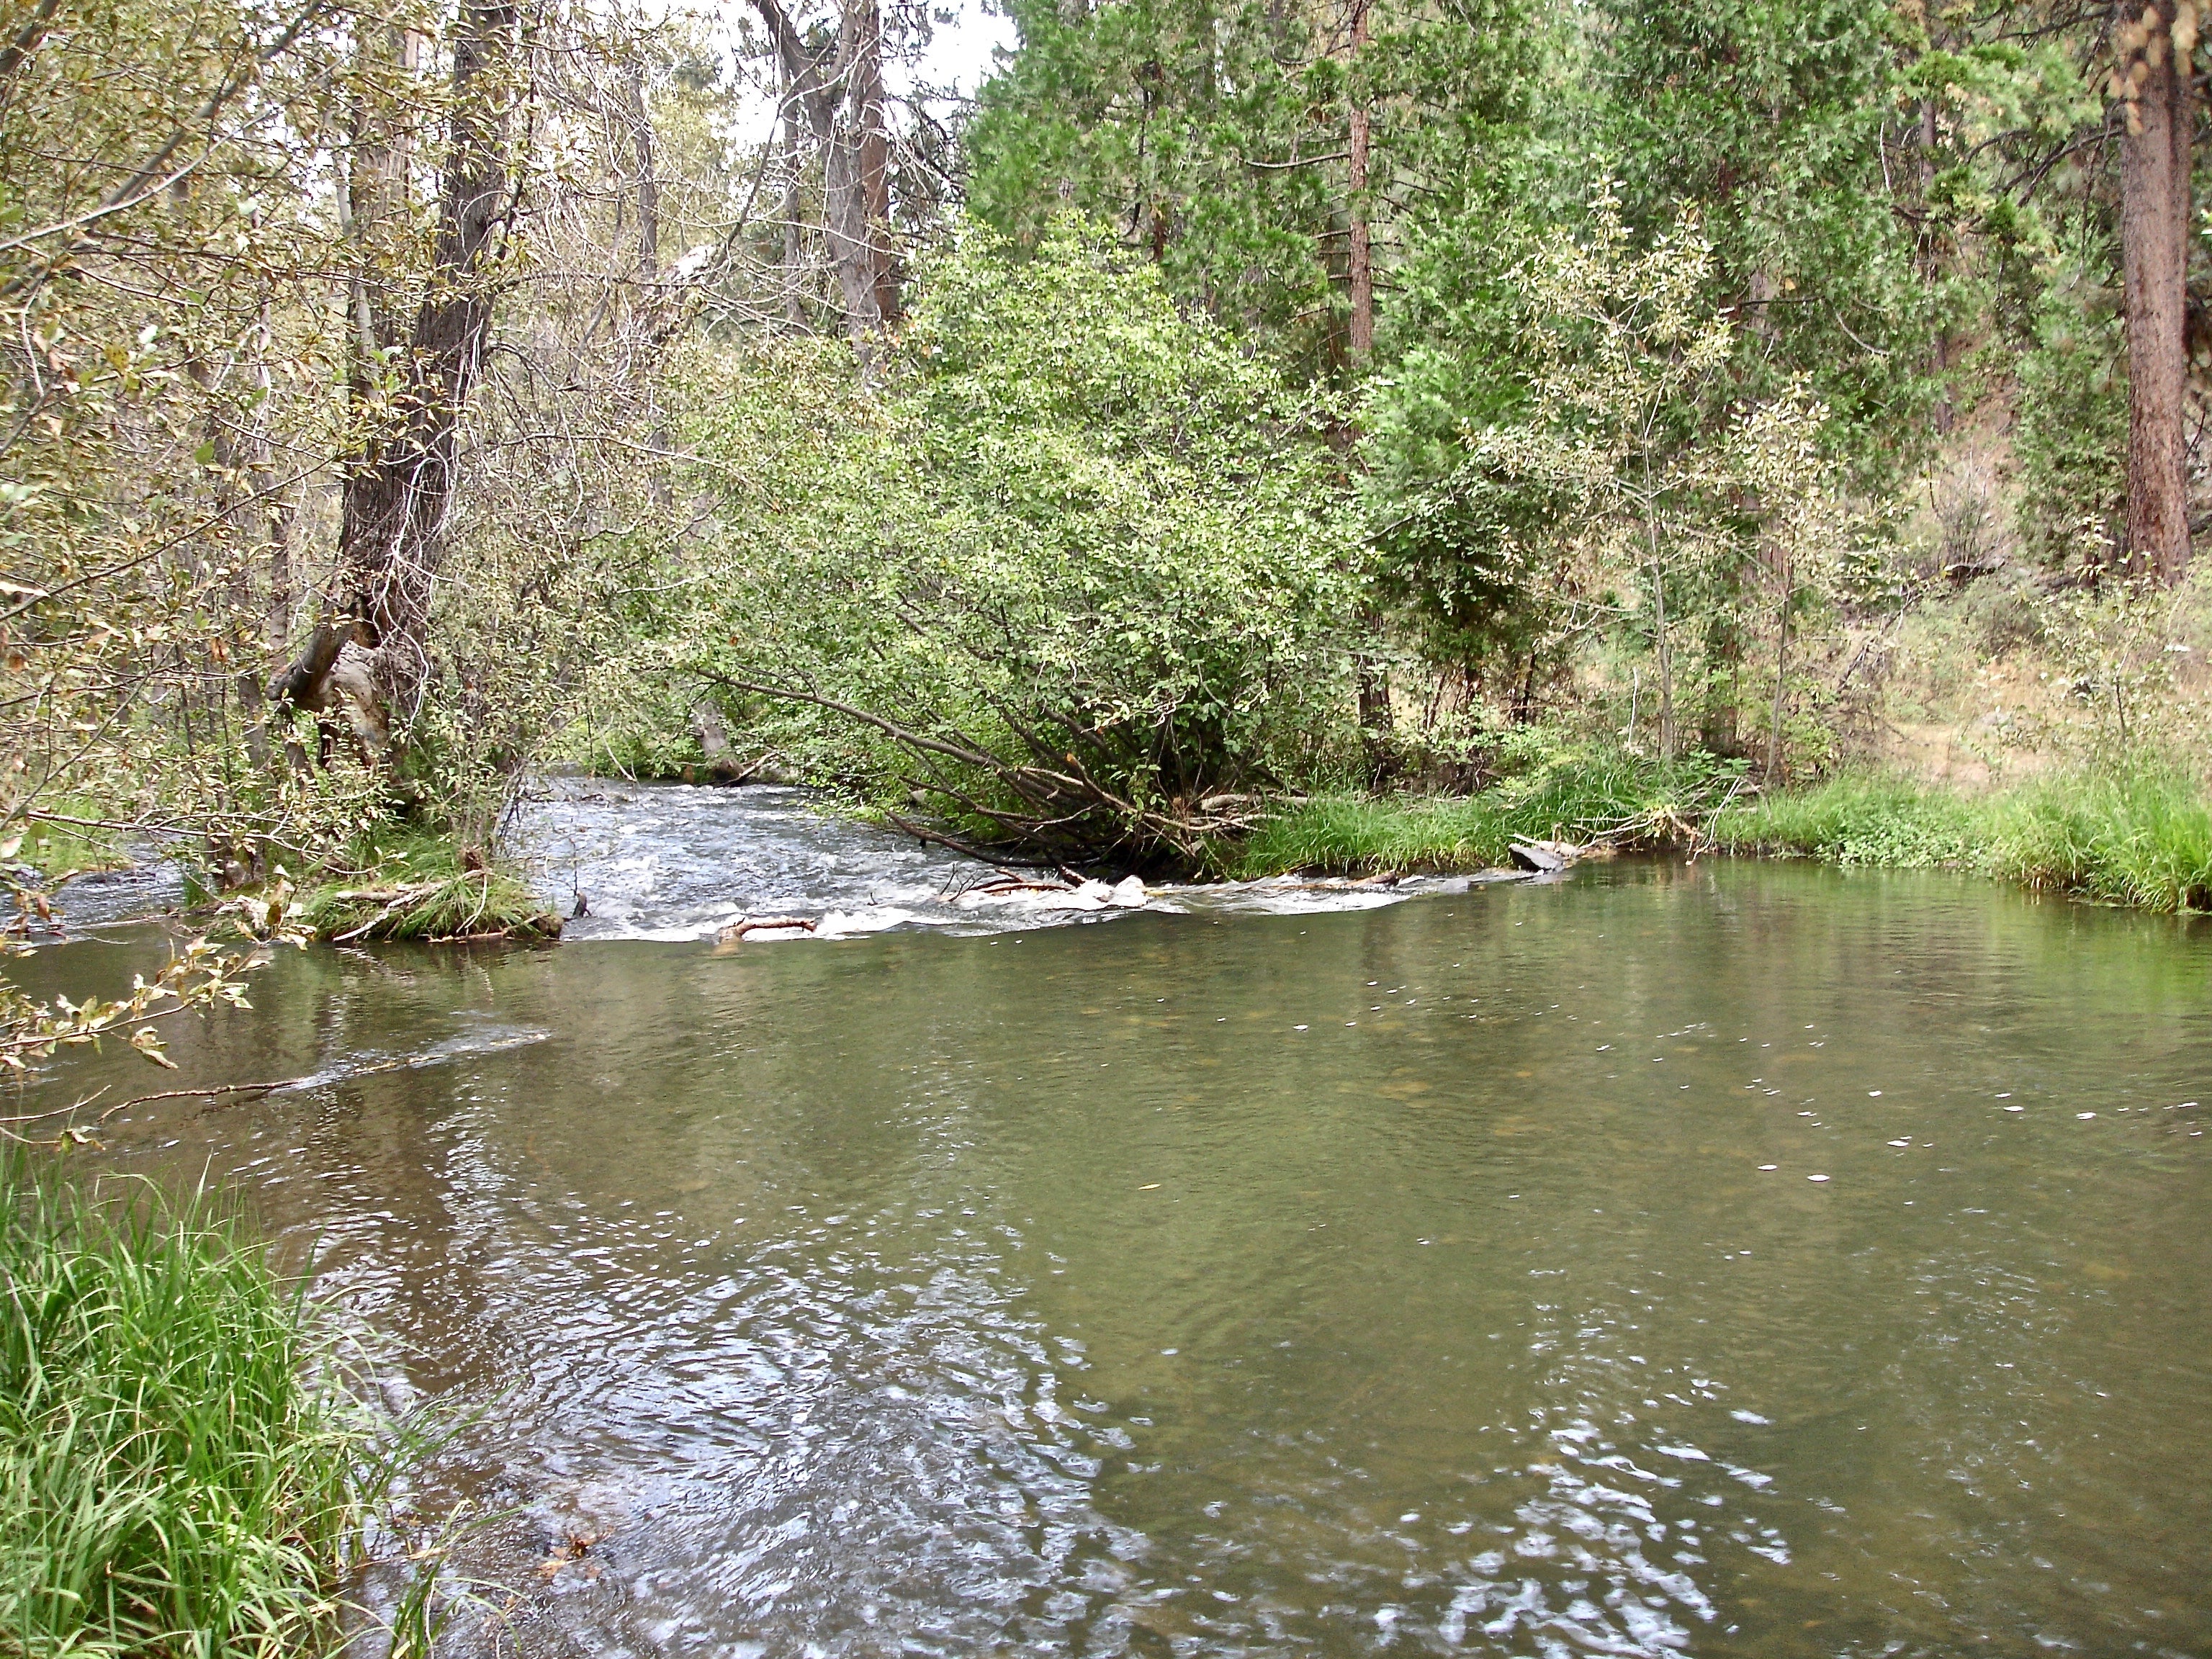 The beautiful creek.